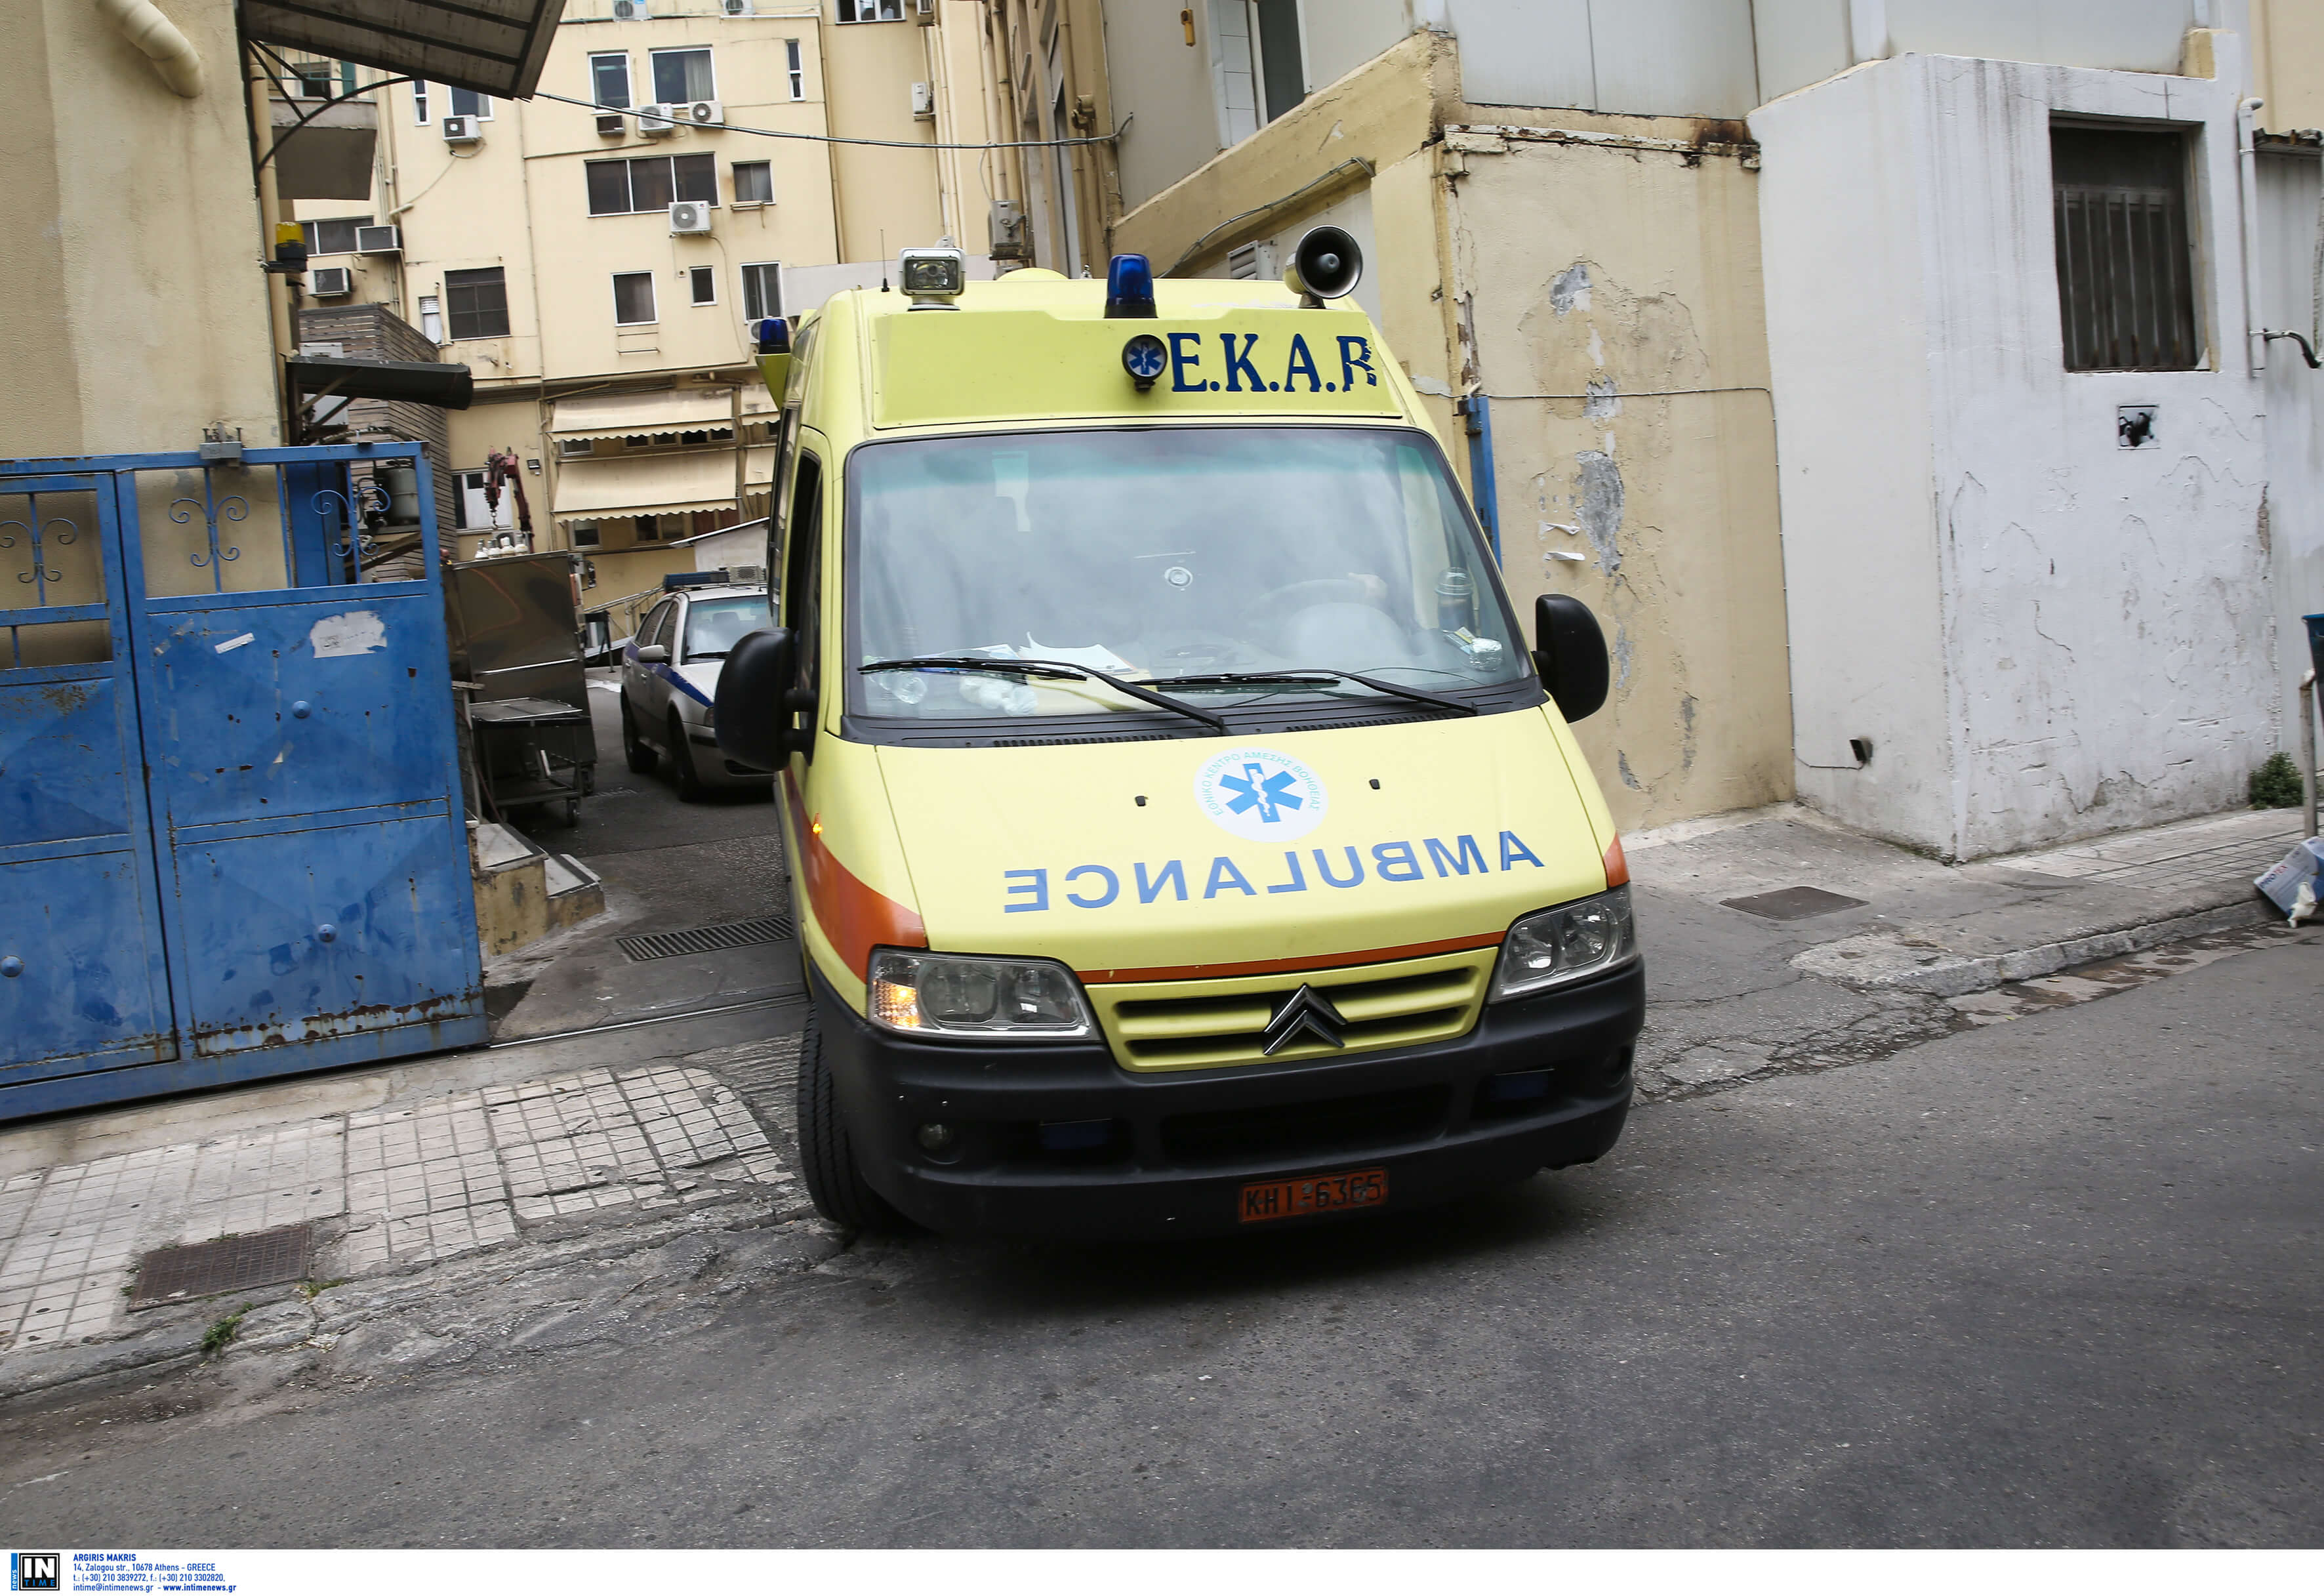 Βόλος: Ευχάριστα νέα για την 9χρονη που διακομίστηκε σε νοσοκομείο με ταξί επειδή δεν υπήρχε ασθενοφόρο!